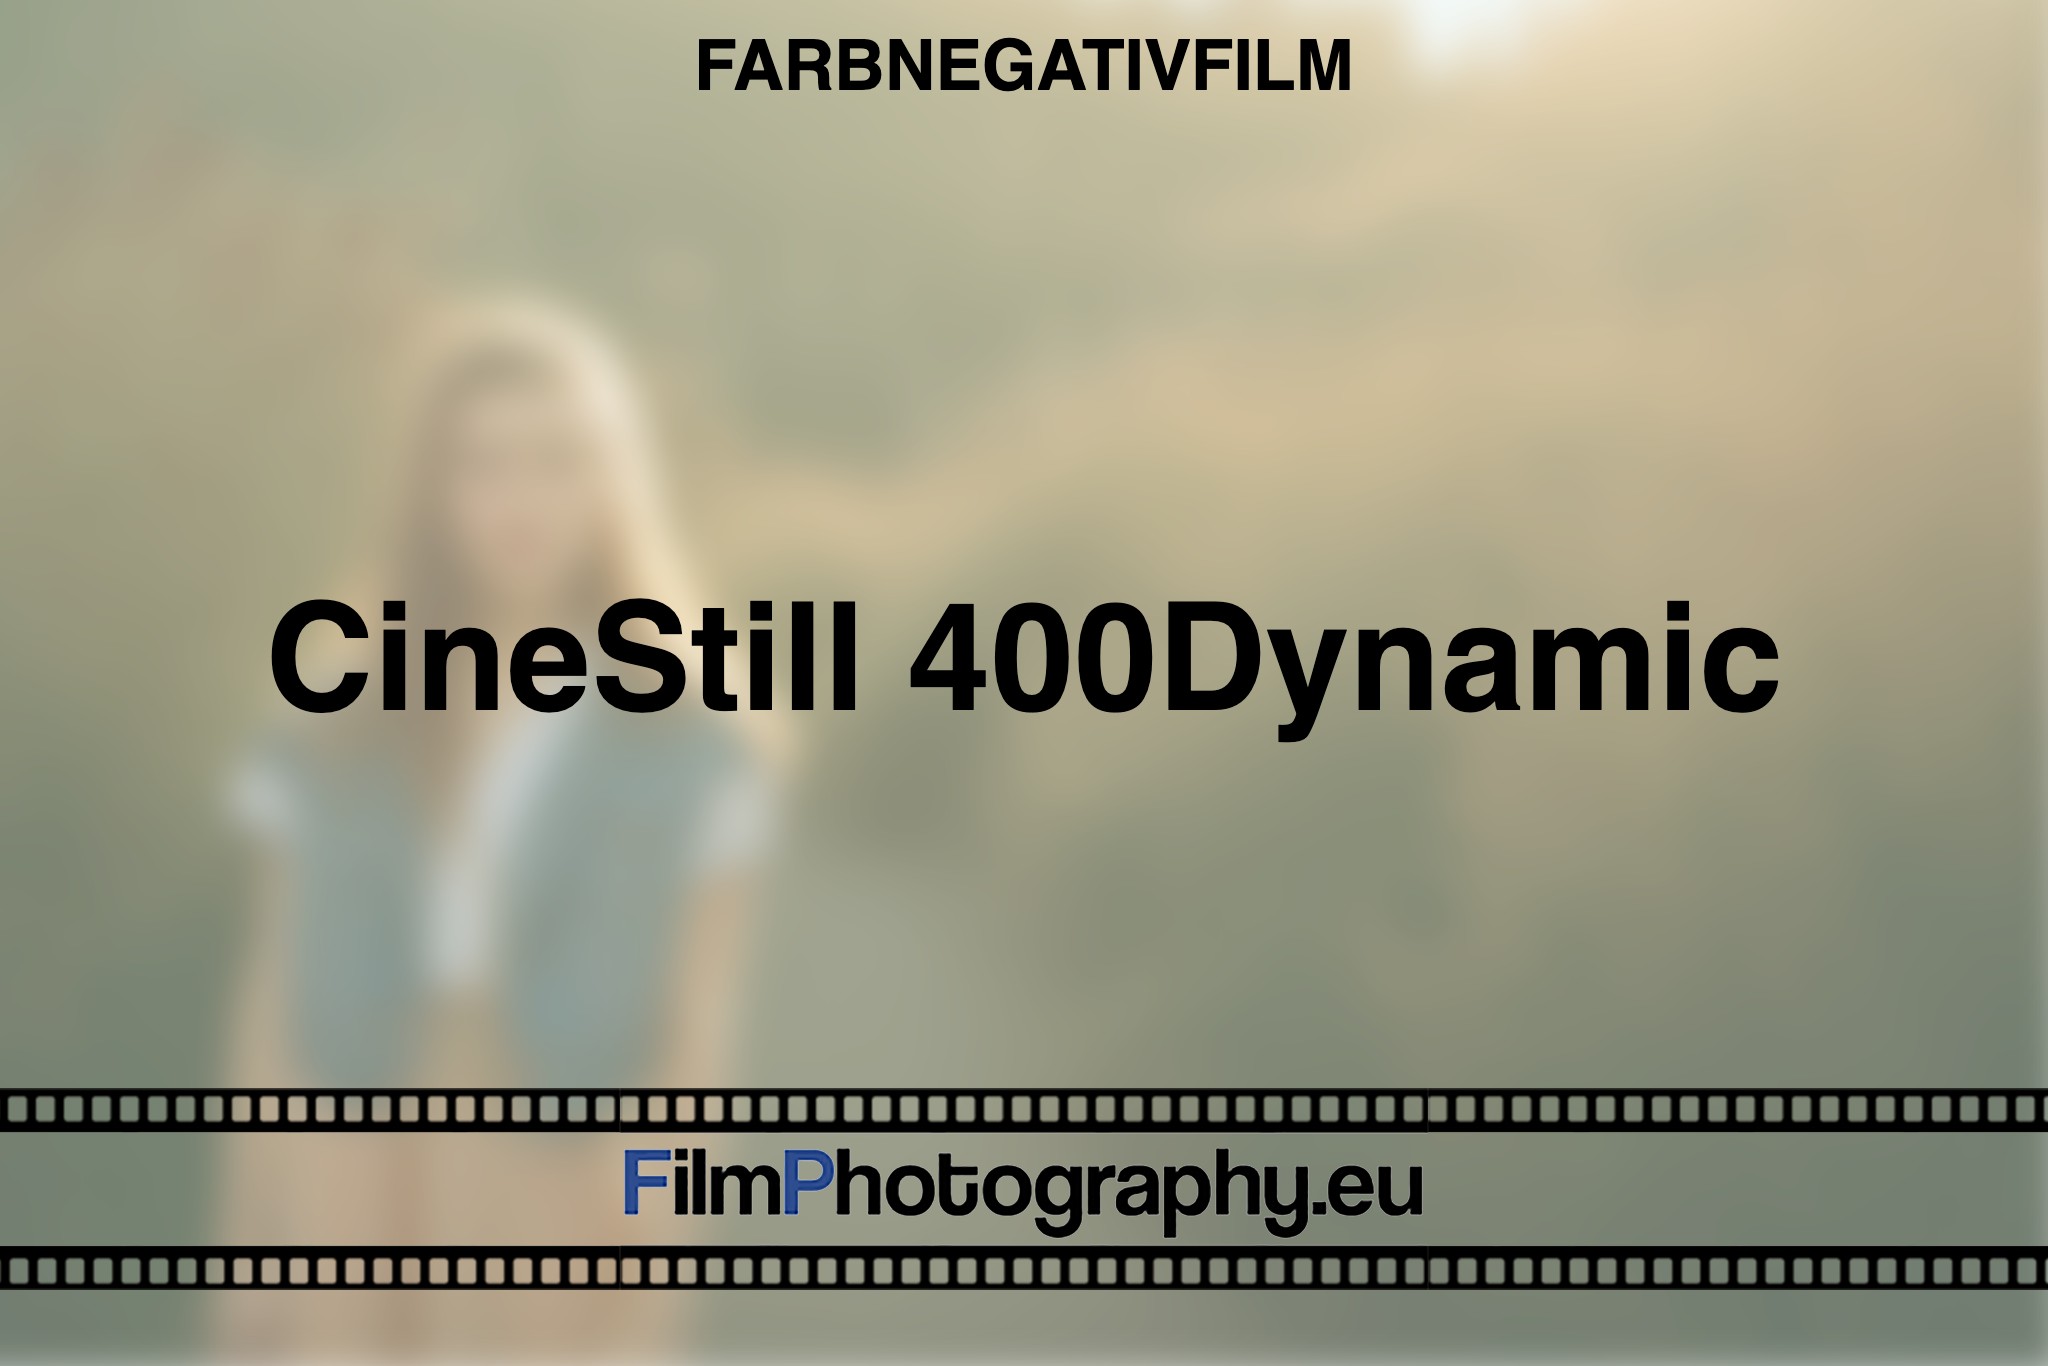 cinestill-400dynamic-farbnegativfilm-bnv